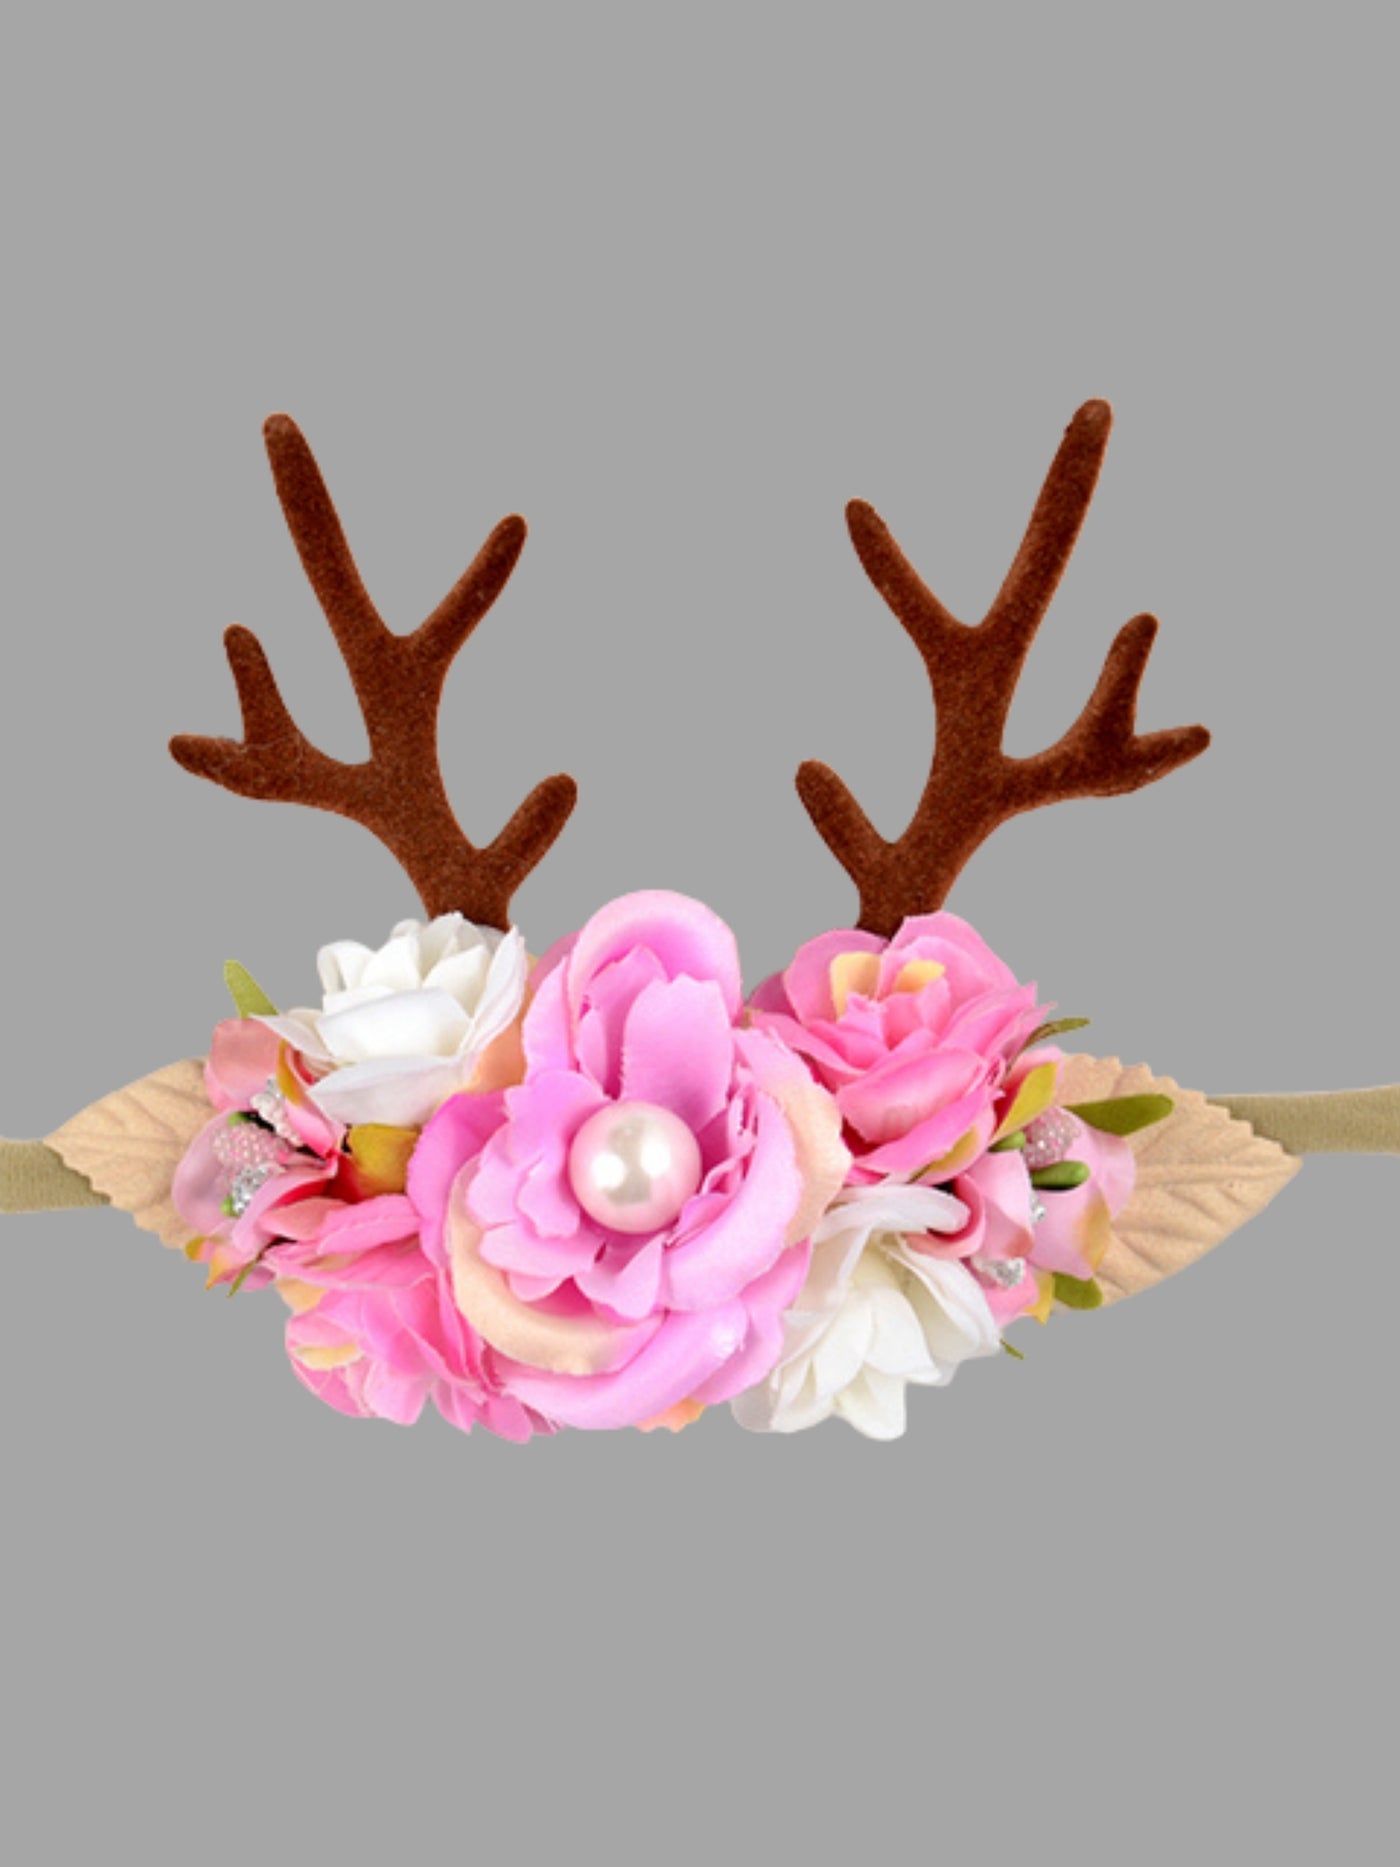 Cute Christmas Accessories | Girls Reindeer Floral Antler Headband 